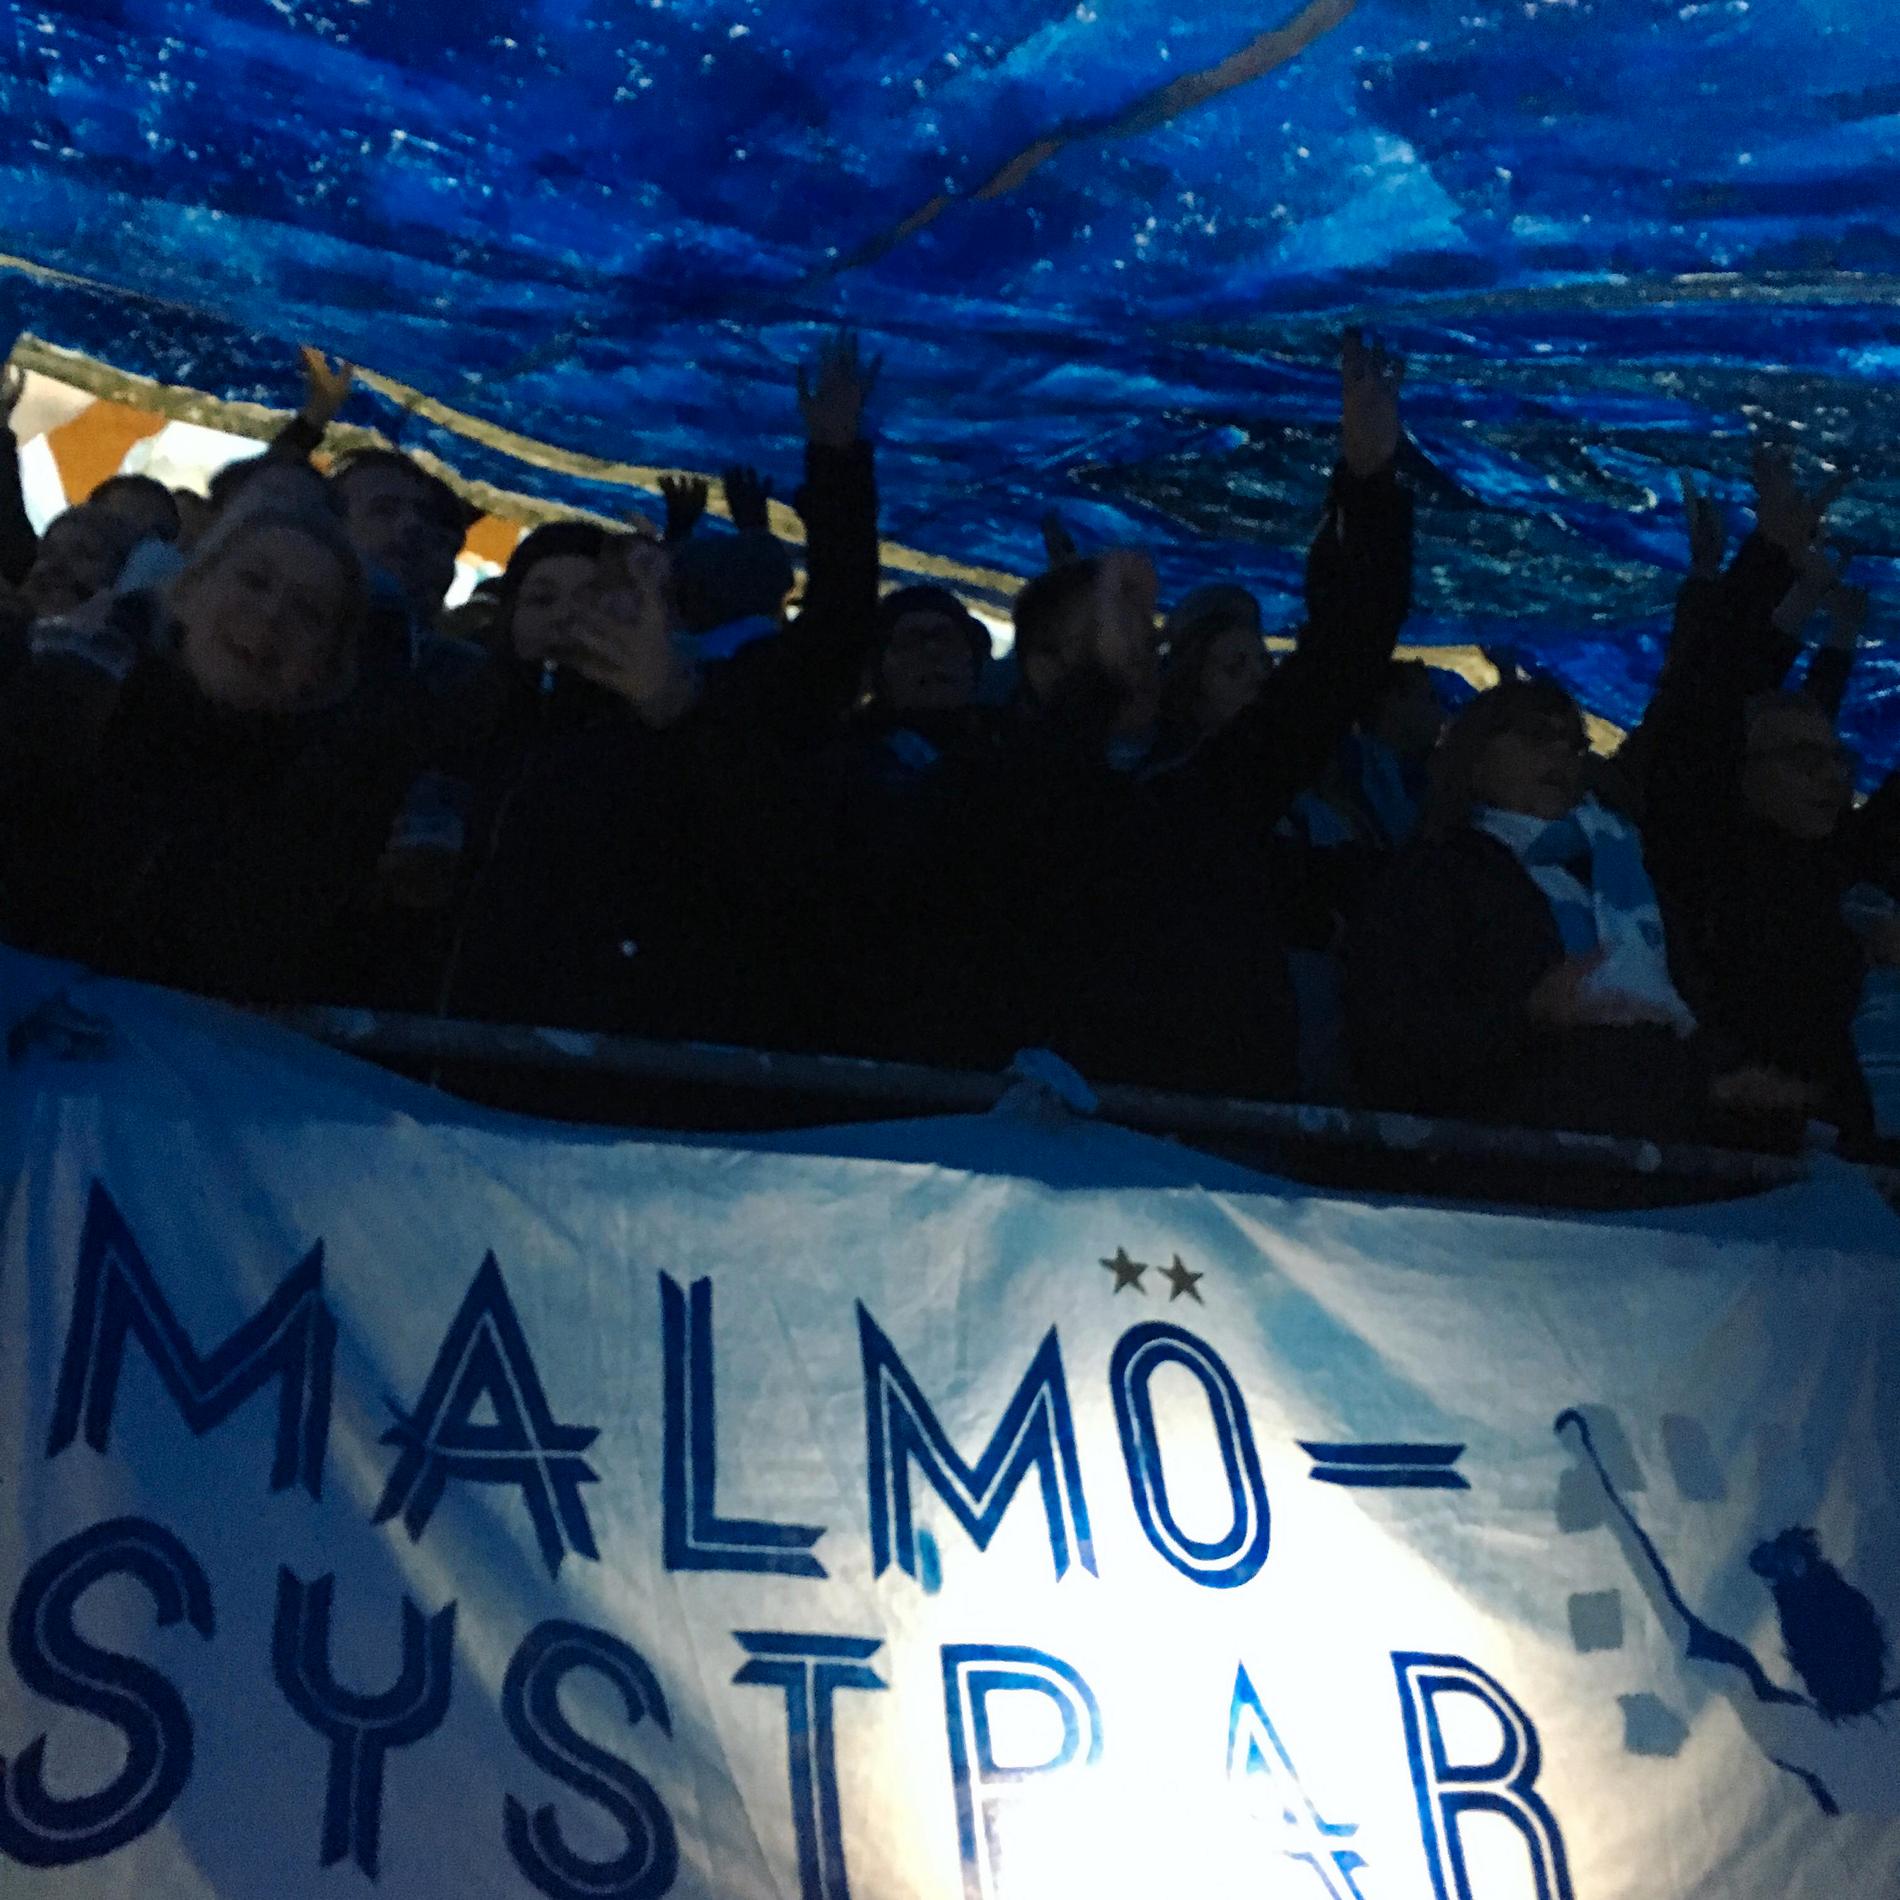 Malmösystrar står alltid vid Gate 4 på Stadion. Alla är välkomna att ansluta.